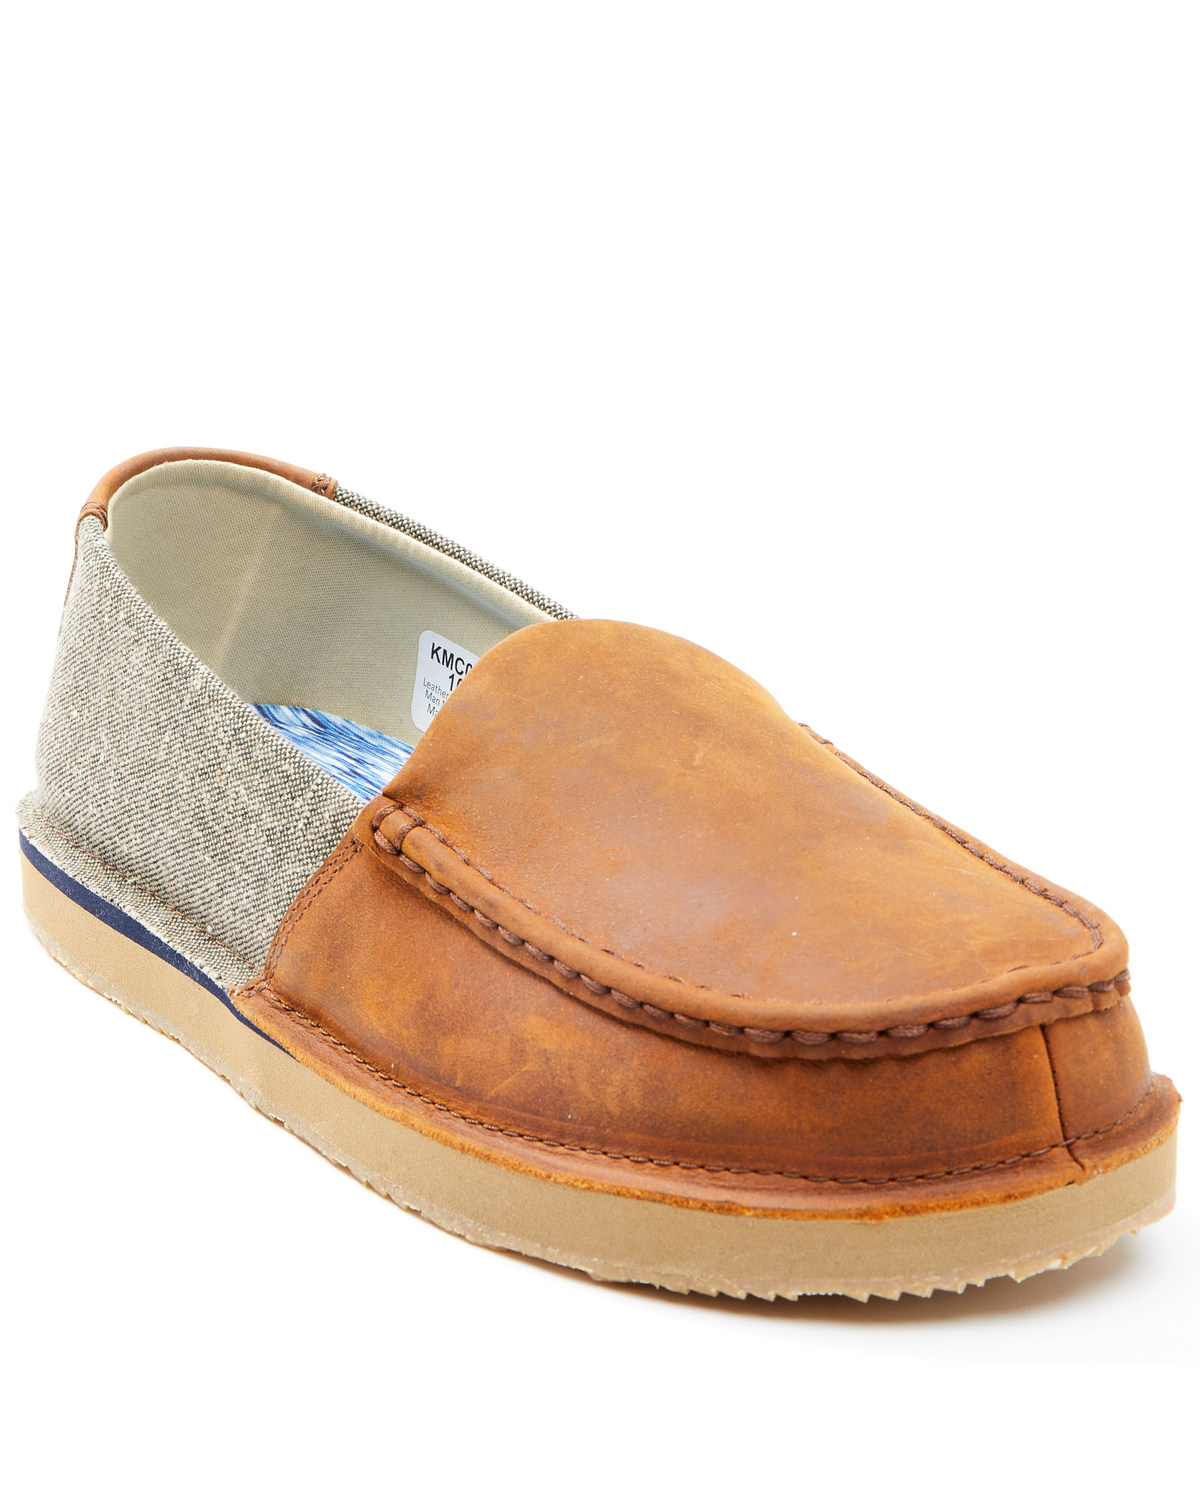 Wrangler Footwear Men's Slip-On Loafers - Moc Toe